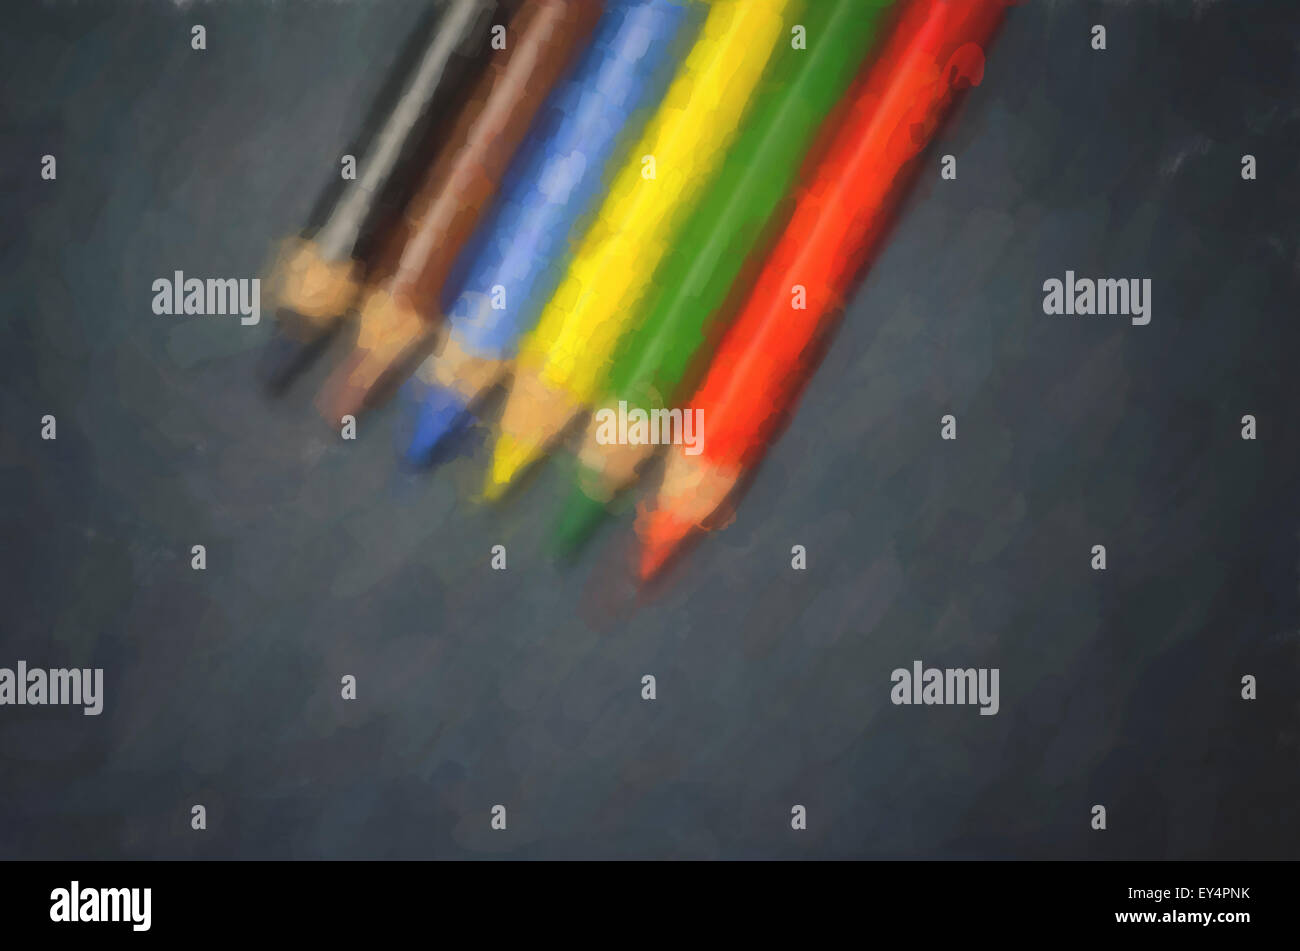 farbiges Holz Buntstiften auf einem dunklen Untergrund - digitale Malerei illustration Stockfoto